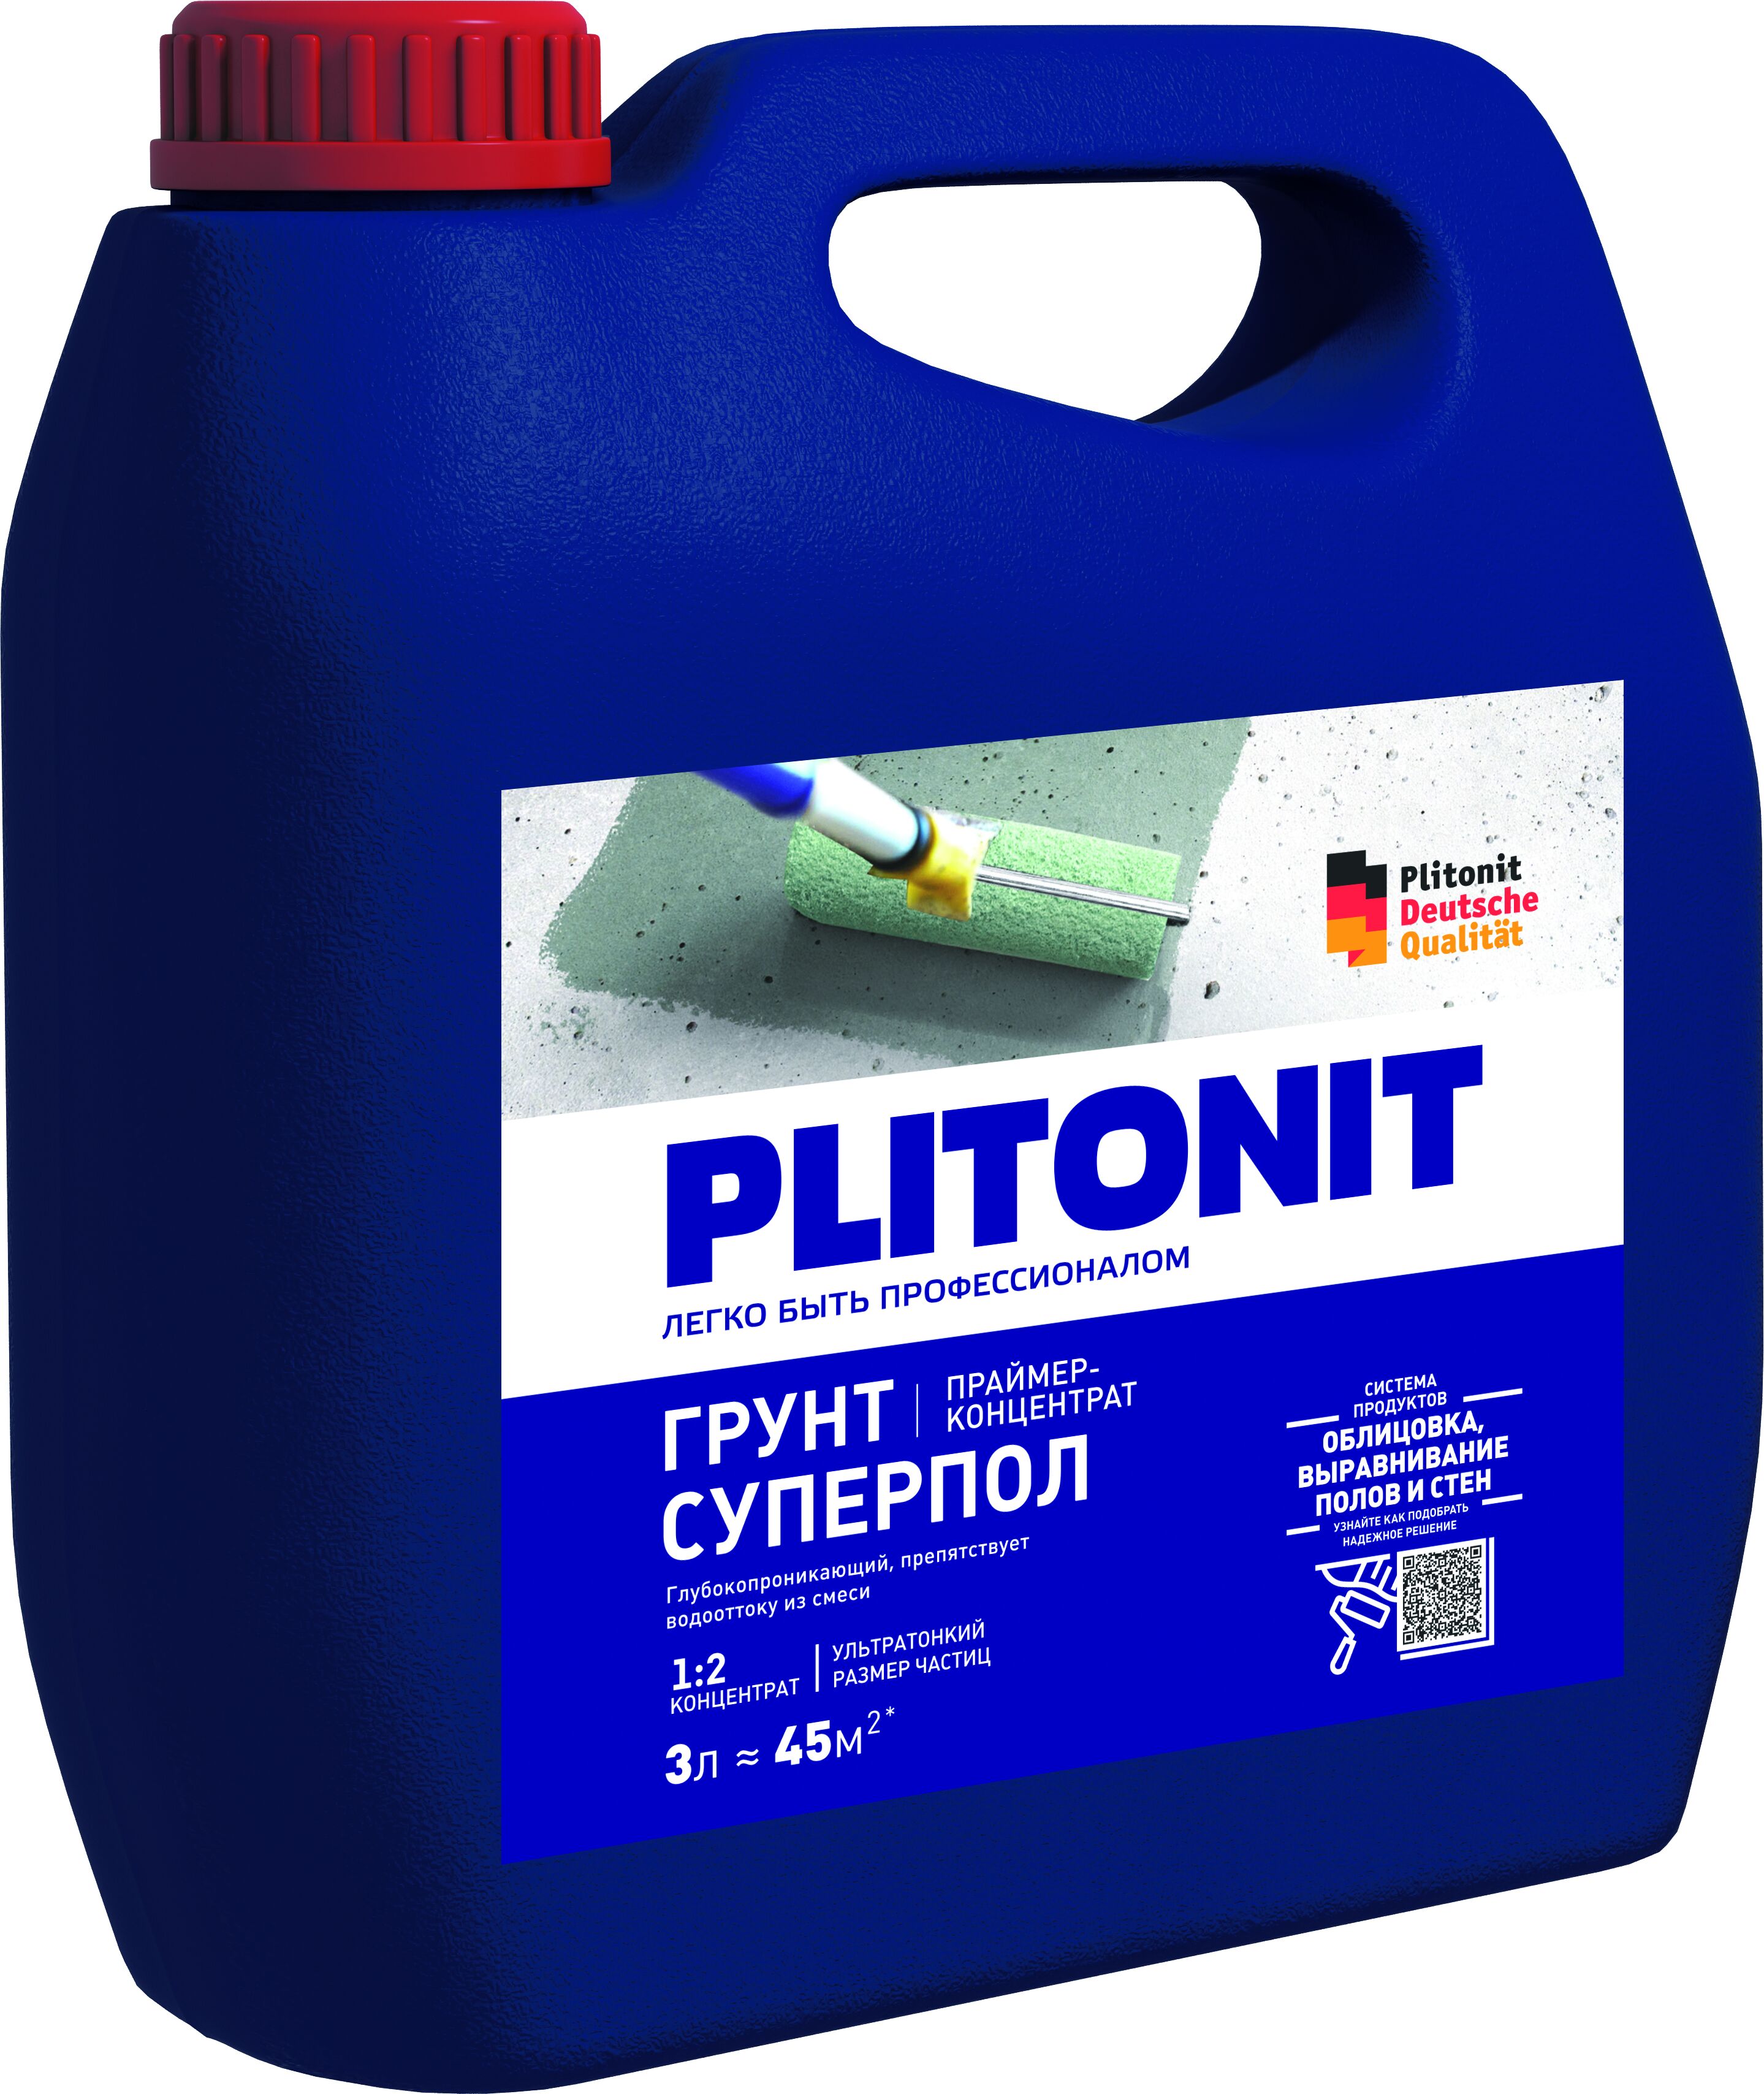 PLITONIT Грунт СуперПол -3 праймер-концентрат 1:2 акрилатный для напольных работ